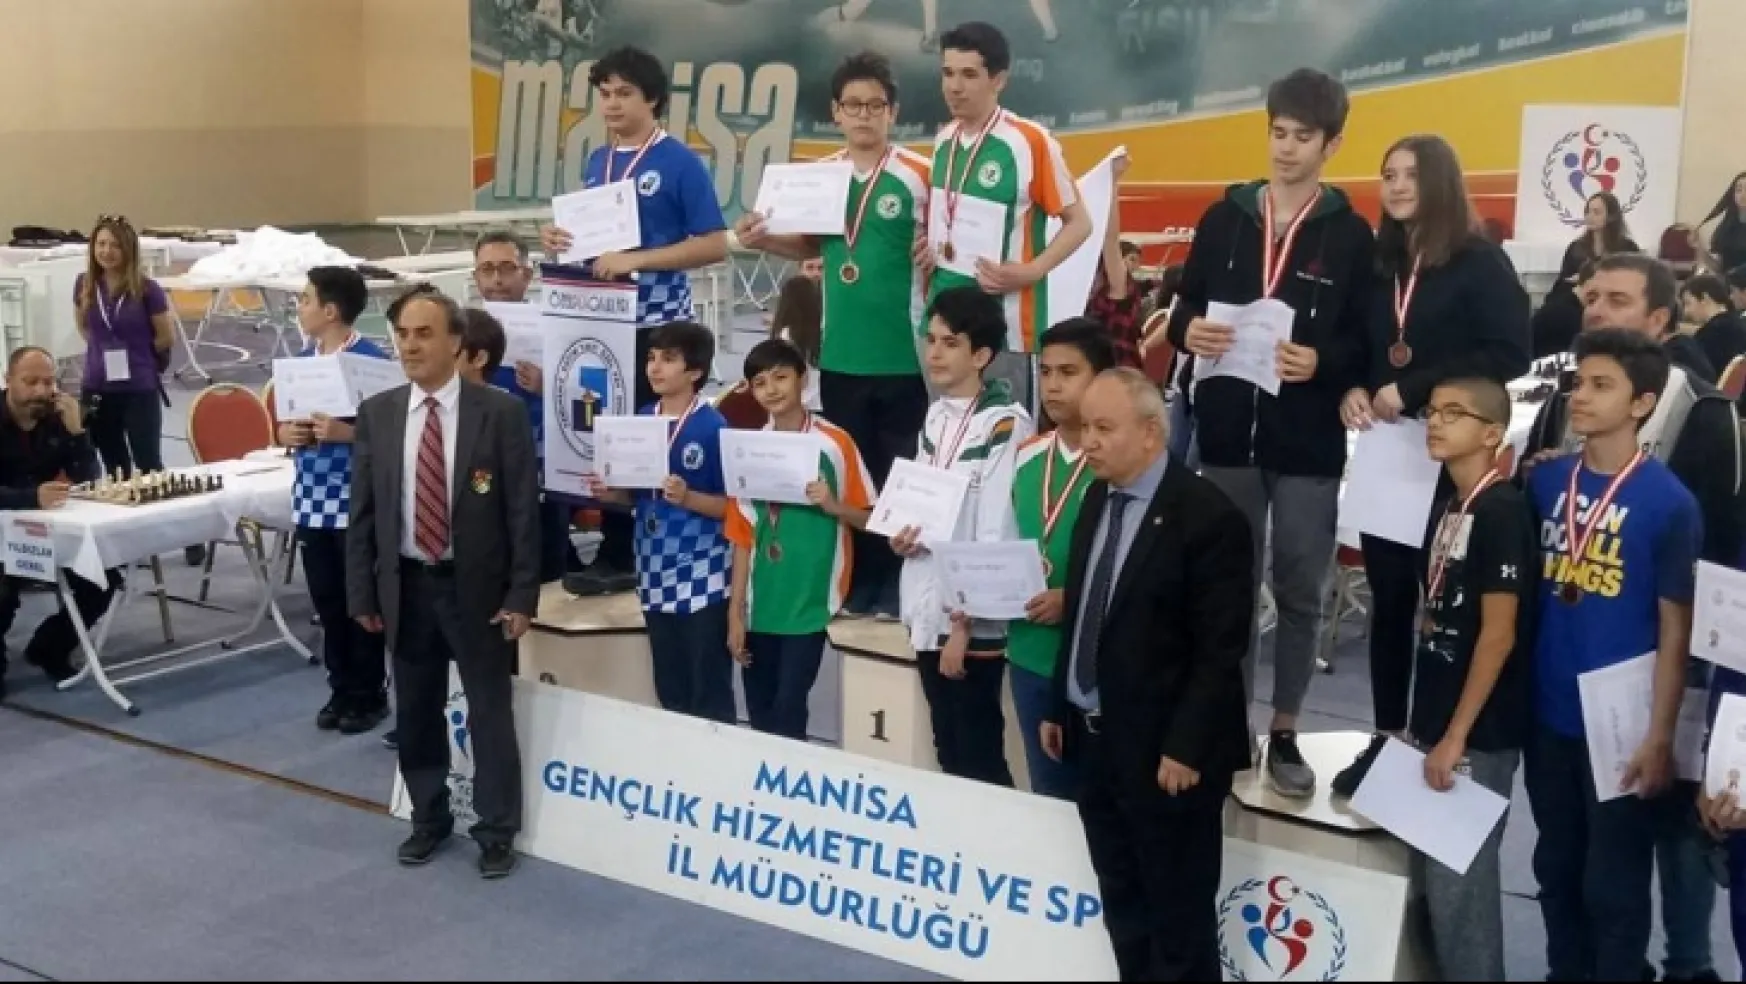 Kocatürk Okulları Türkiye Finallerine katılmaya hak kazandı